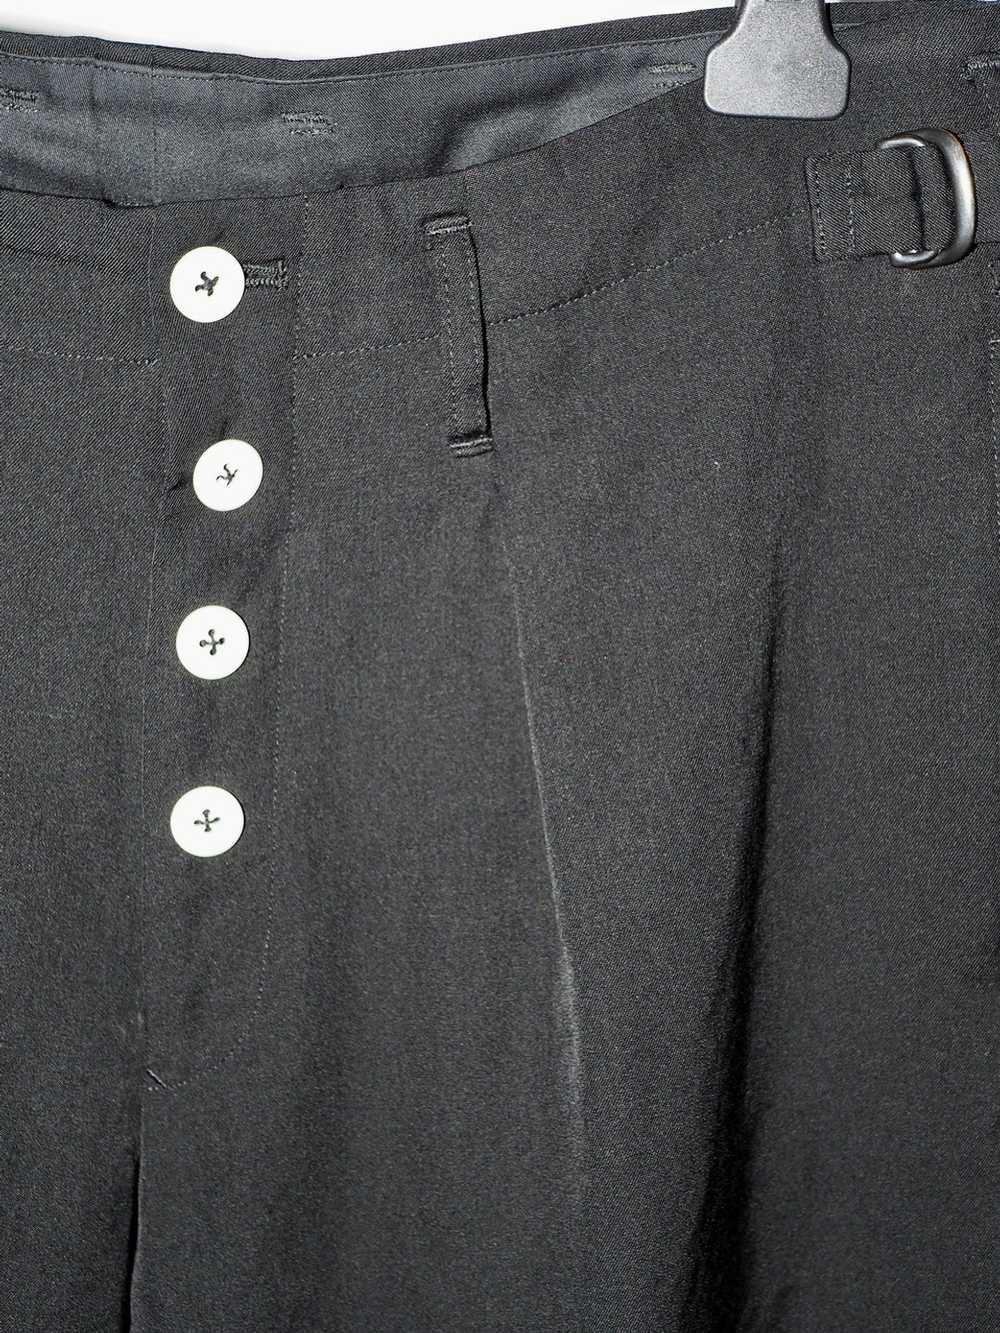 Yohji Yamamoto Yohji Yamamoto Cropped pants A/W 19 - image 3